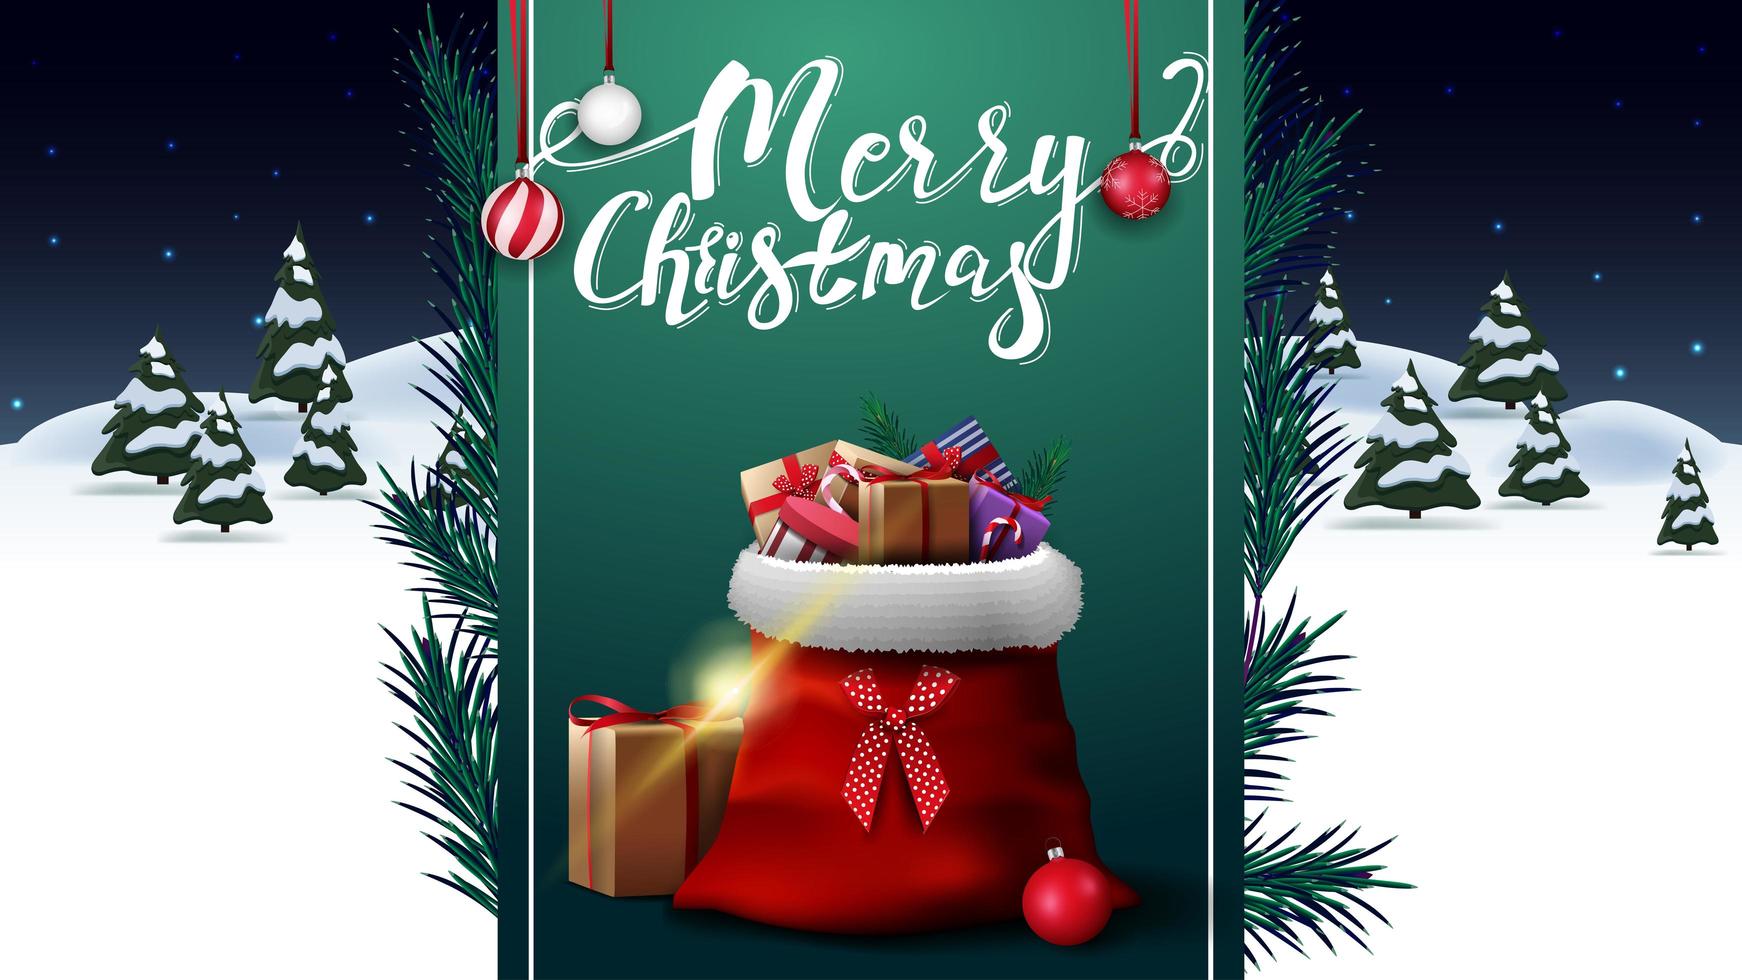 Frohe Weihnachten, Grußpostkarte mit Nachtwinterlandschaft und grünem vertikalem Band mit Weihnachtsmann-Tasche mit Geschenken vektor